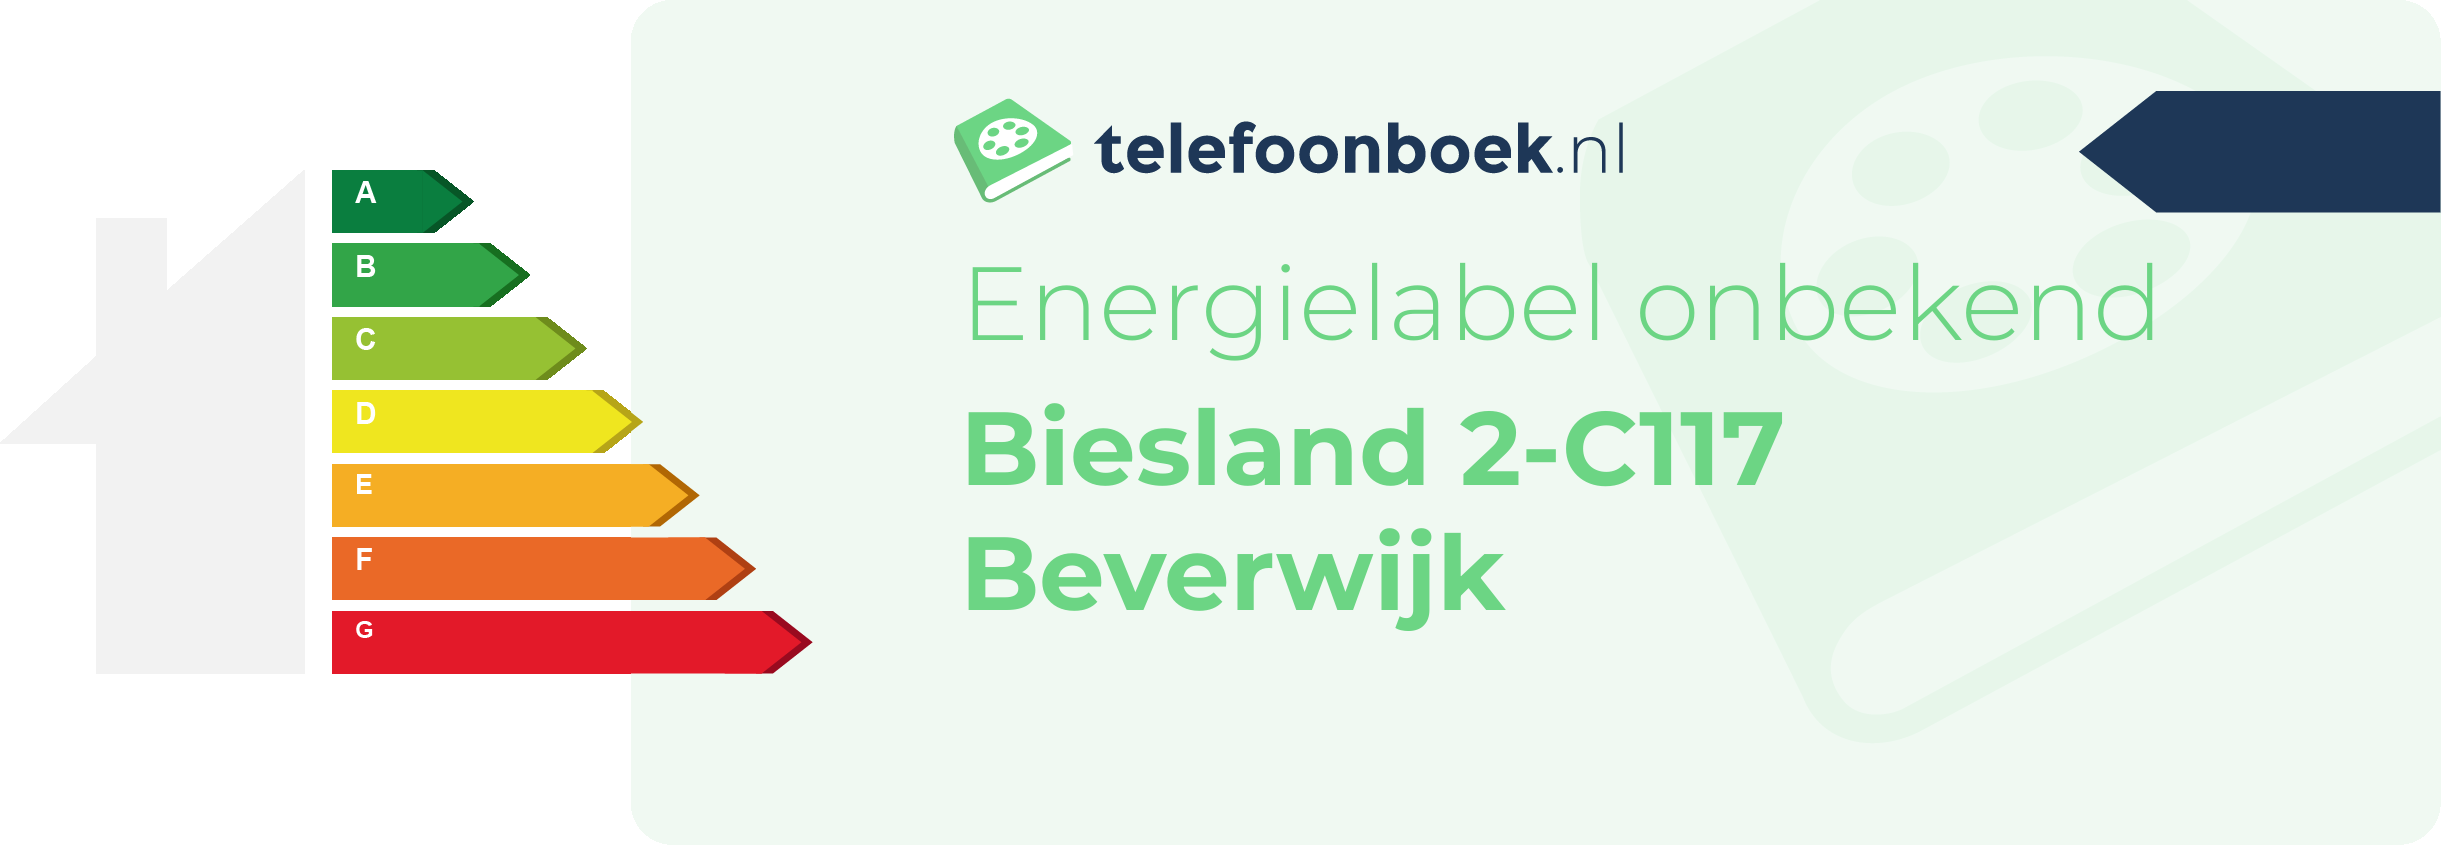 Energielabel Biesland 2-C117 Beverwijk